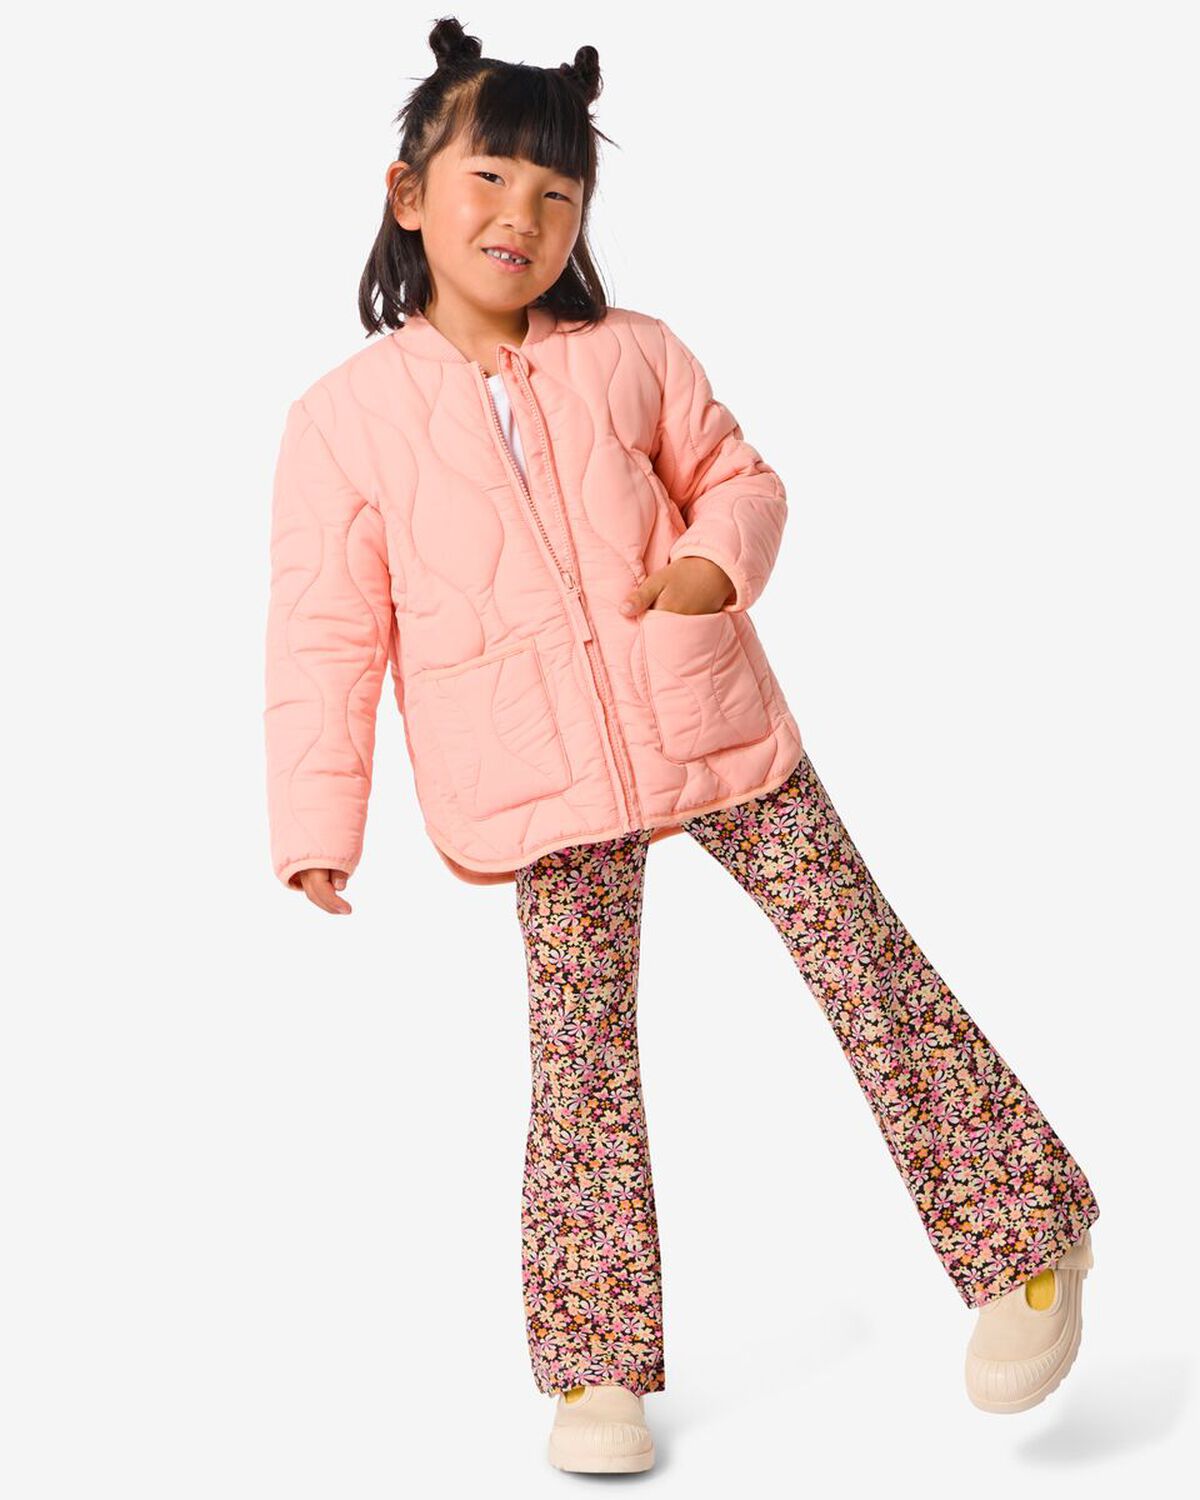 Kinder-Outfit Jacke mit Hose - 200252 - HEMA